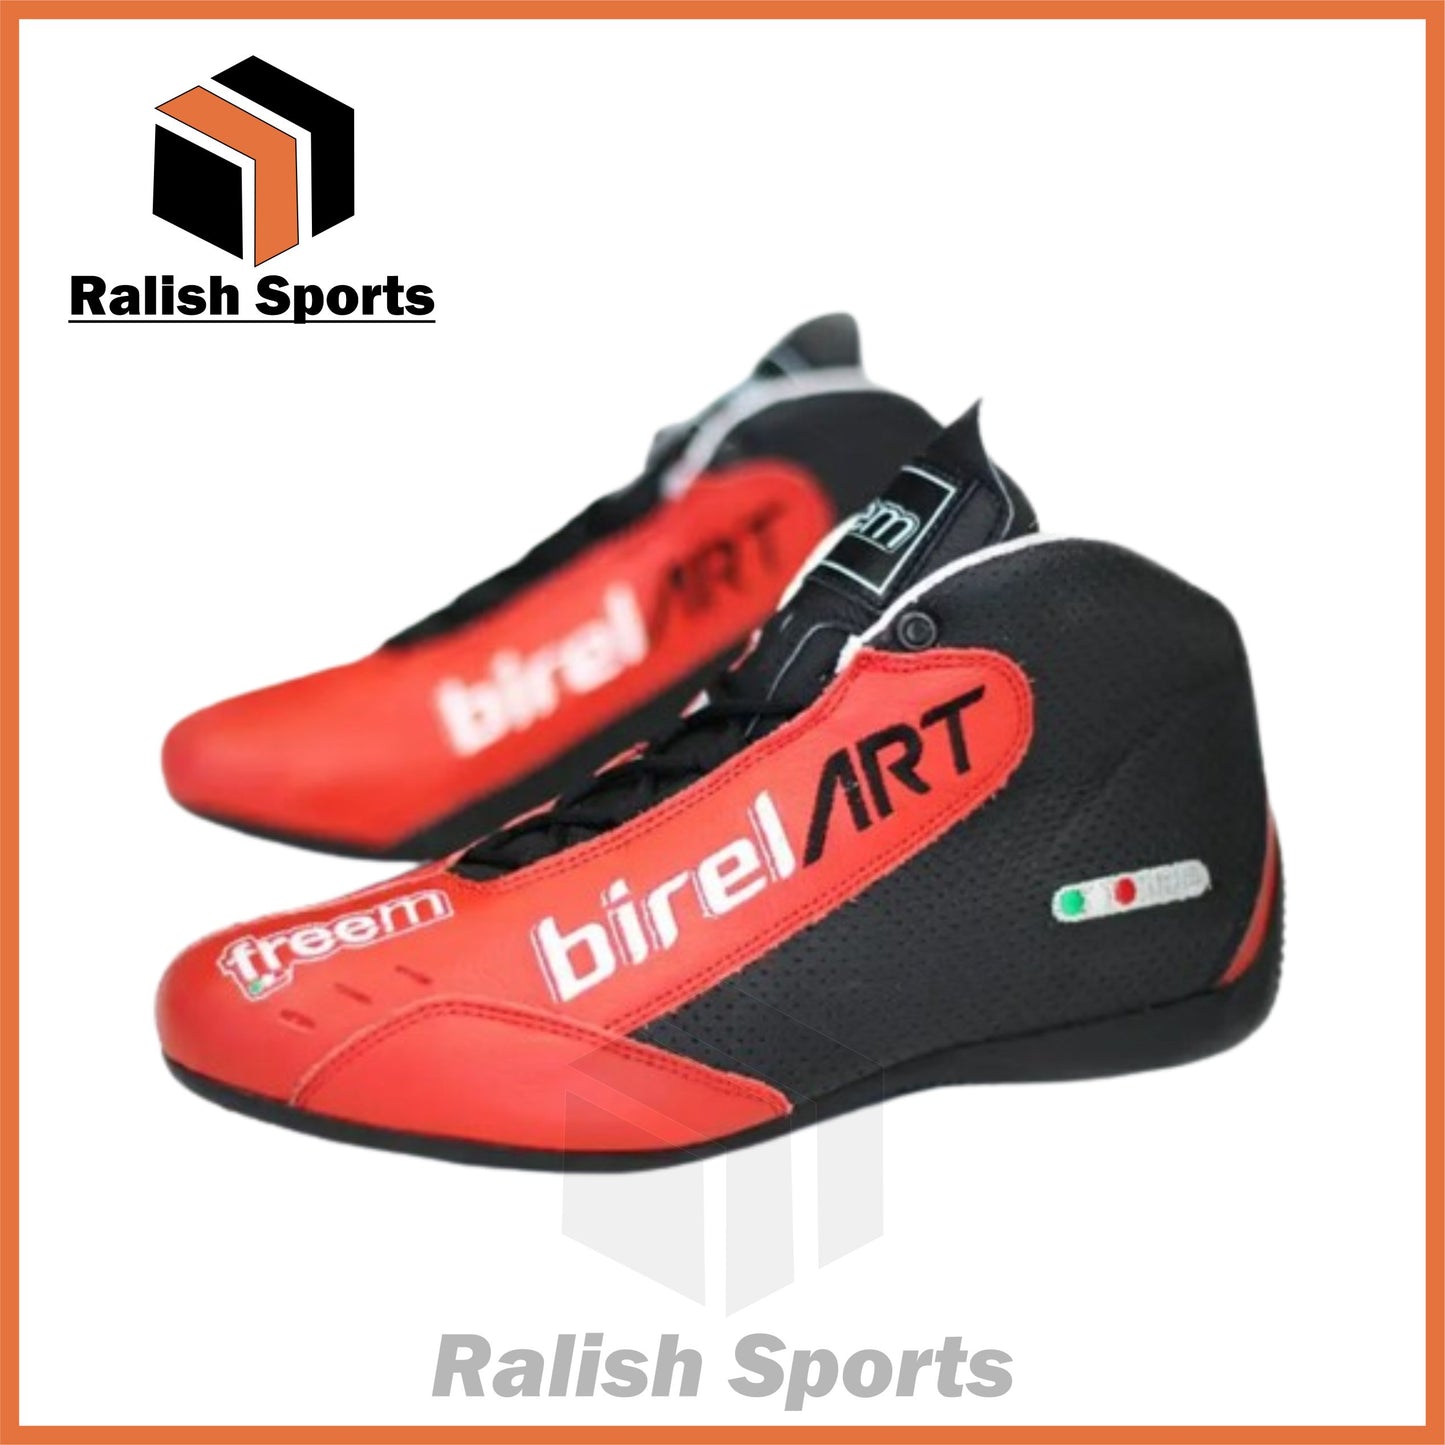 Kart Racing Birel art shoes